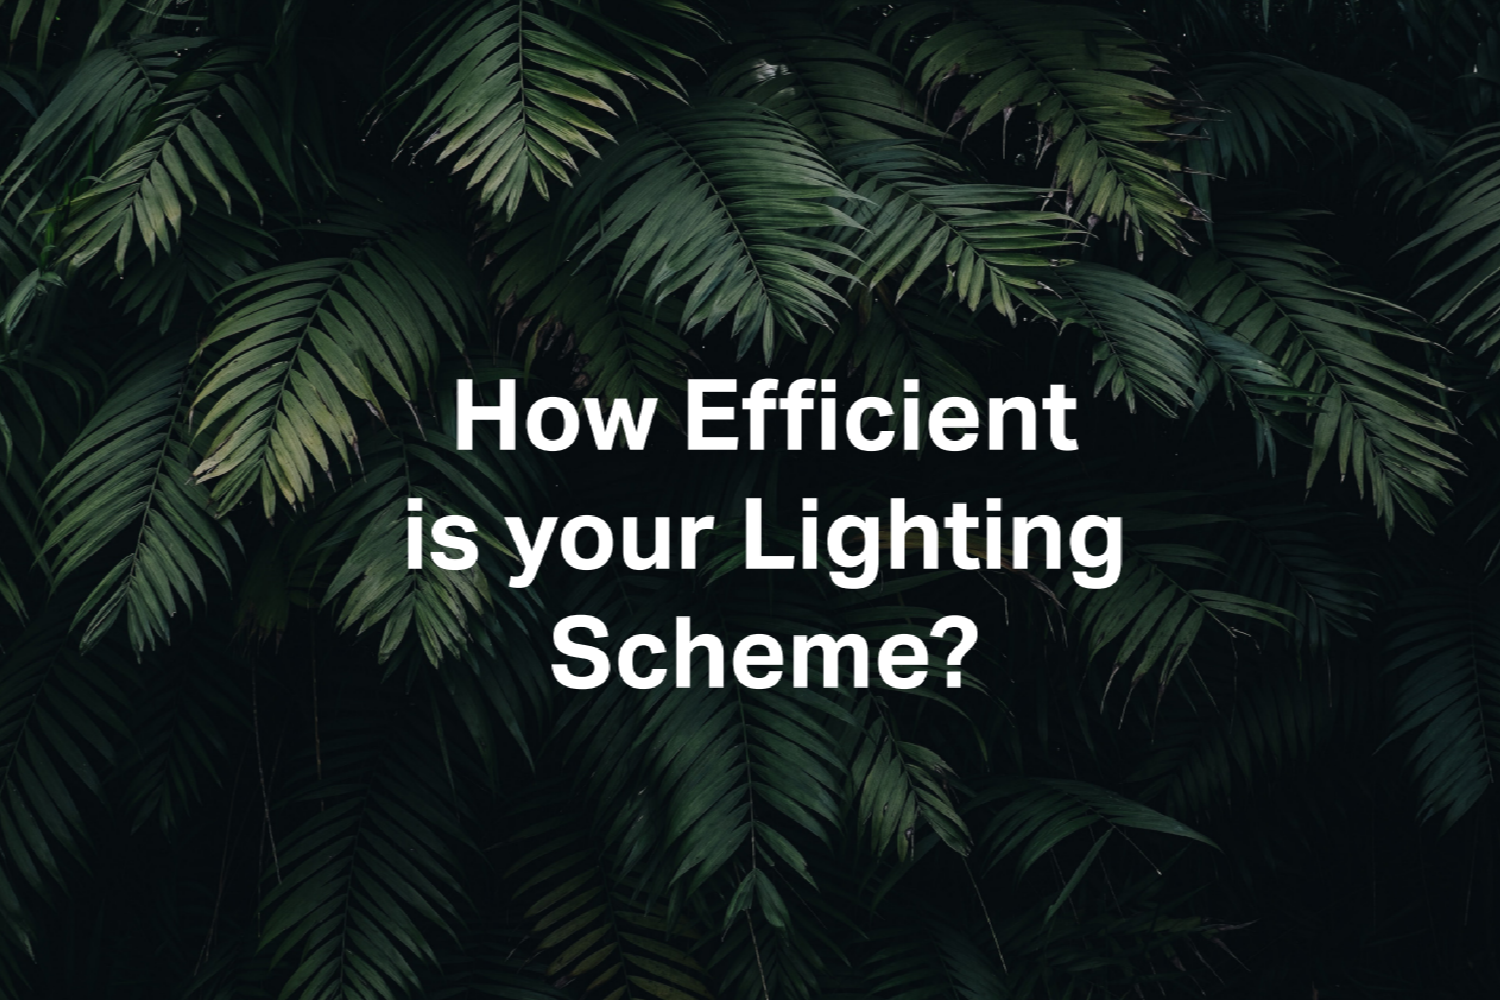 How Efficient is your Lighting Scheme?